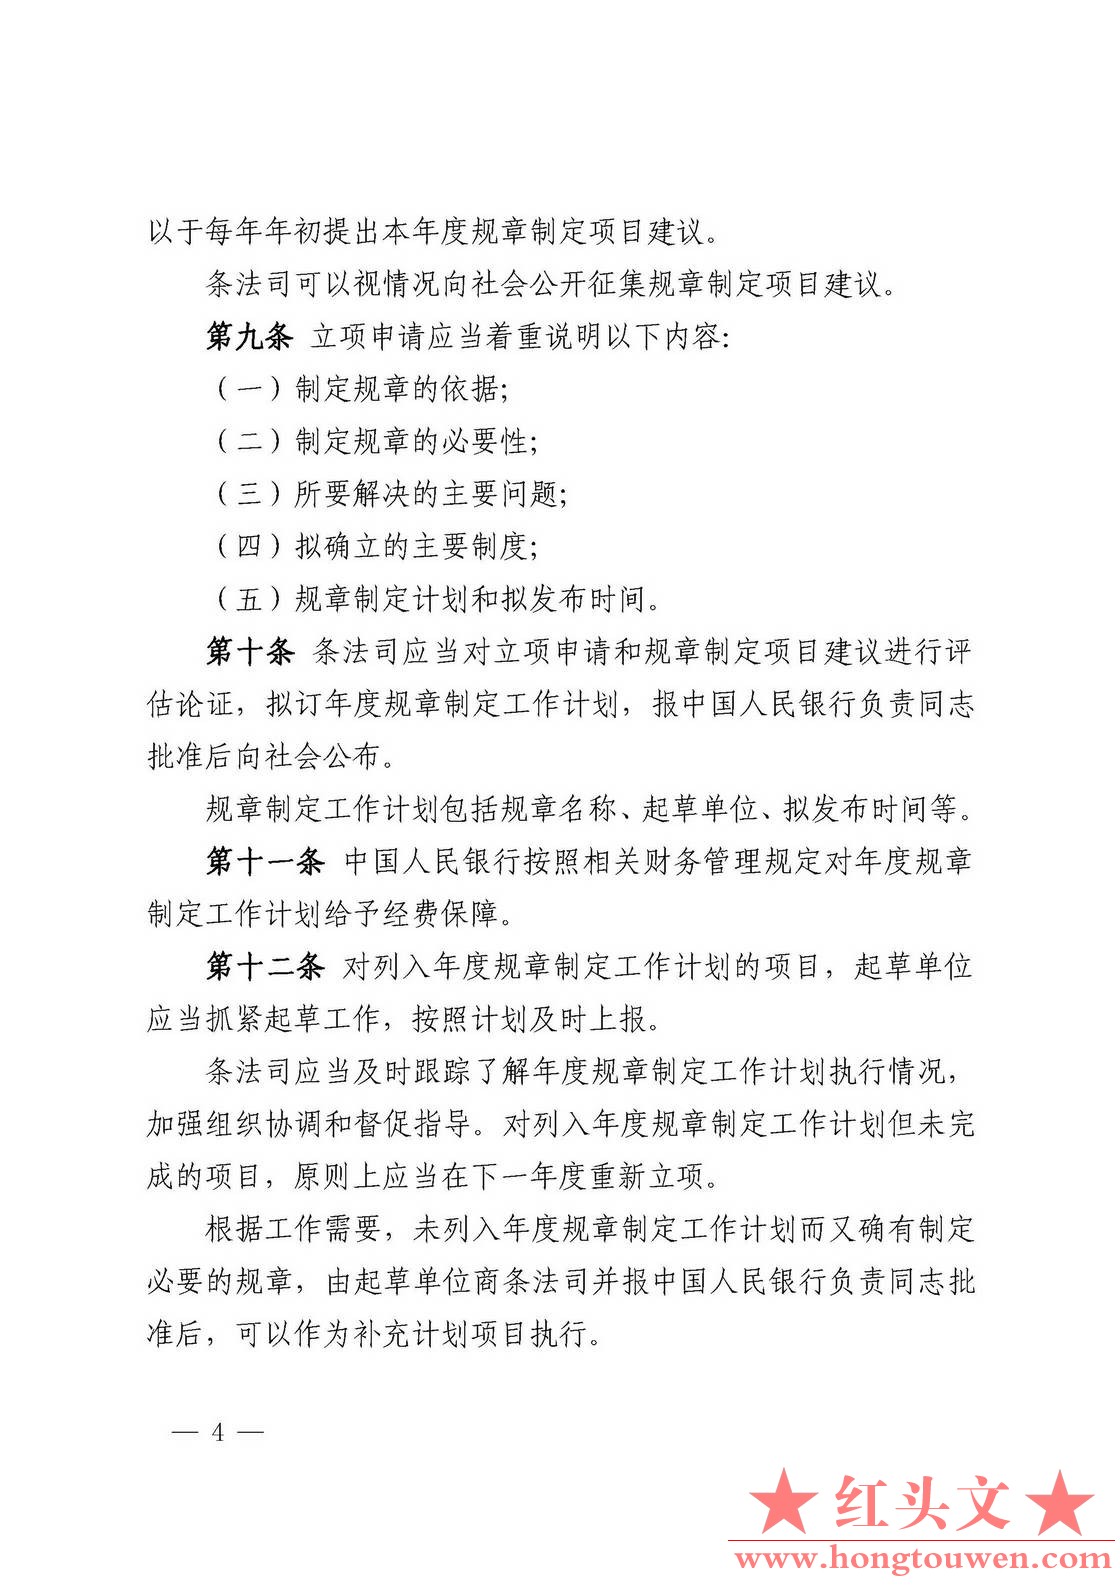 中国人民银行令[2018]3号-中国人民银行规章制定程序与管理规定_页面_04.jpg.jpg